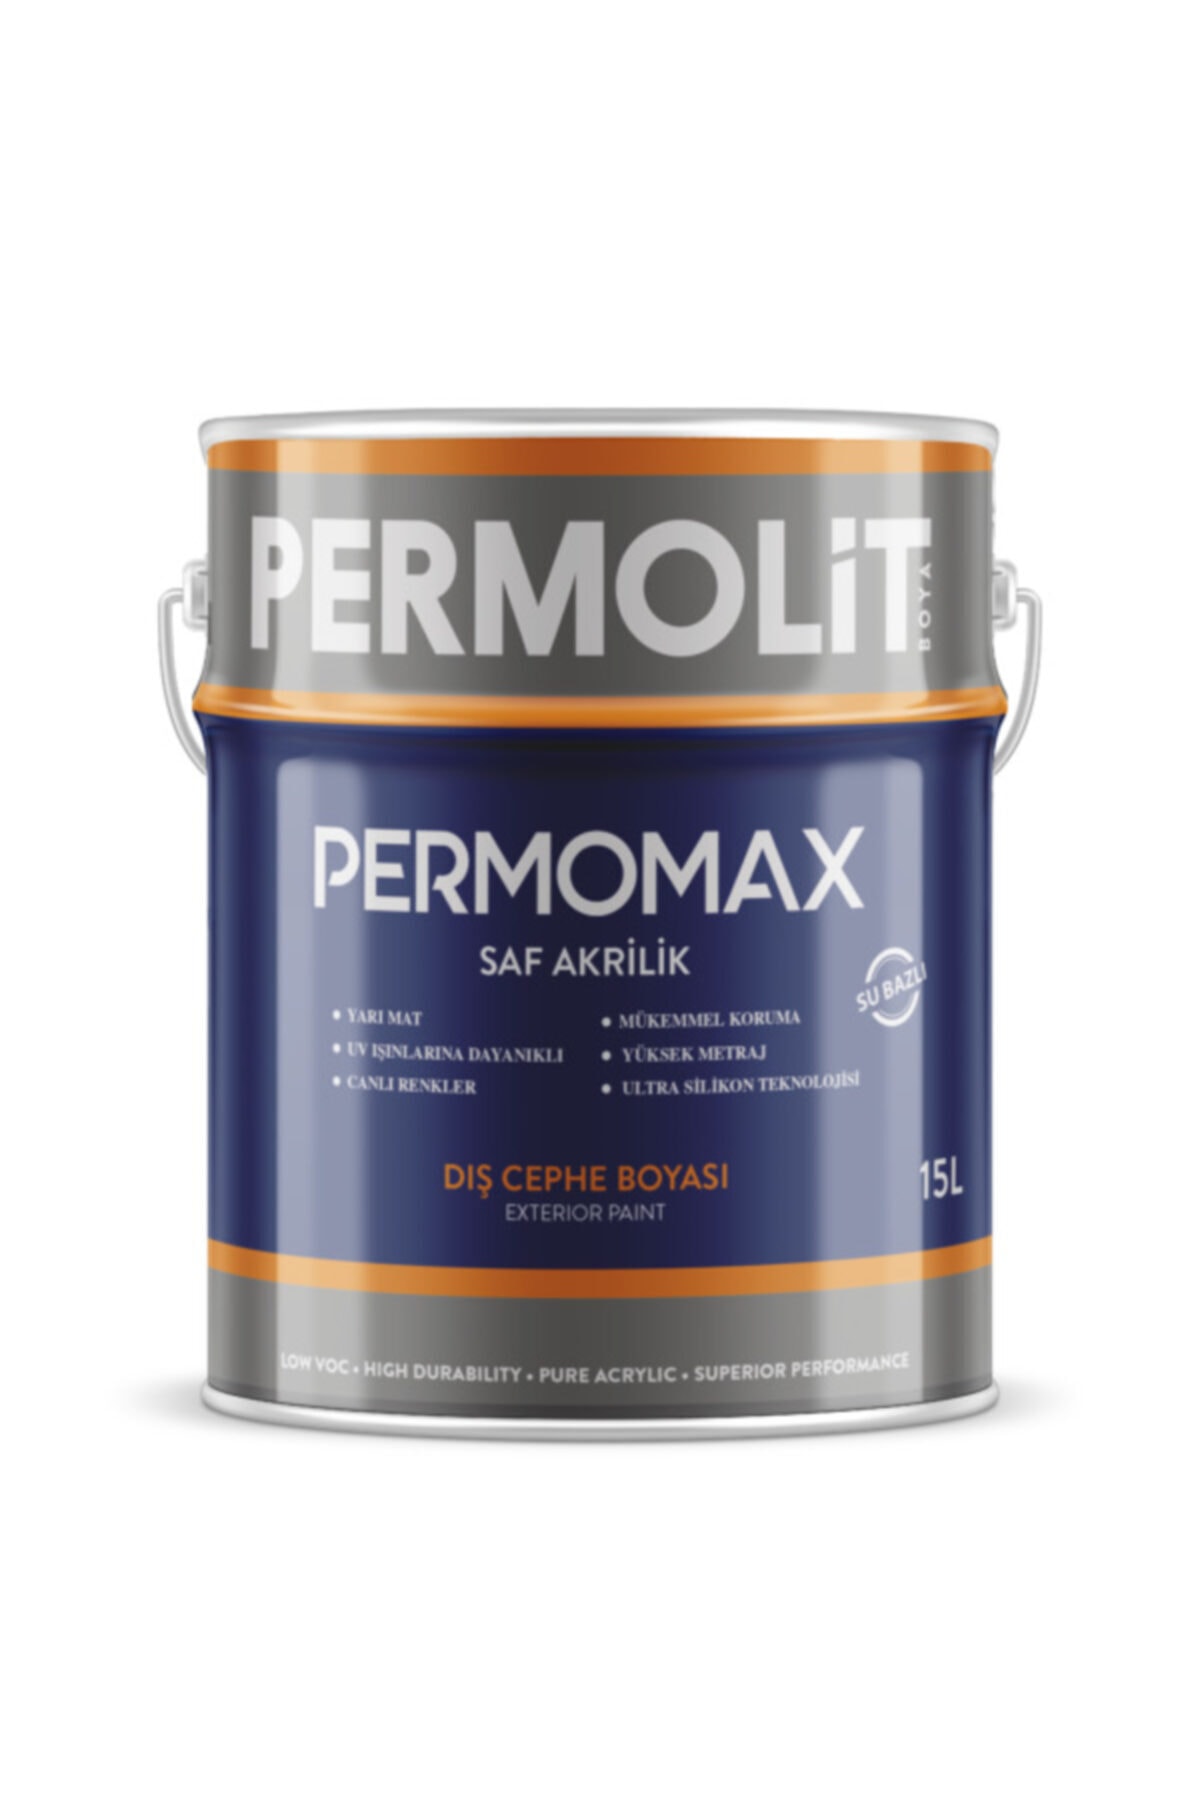 Permolit Permomax Silikonlu Dış Cephe Boyası 20 kg - Duman